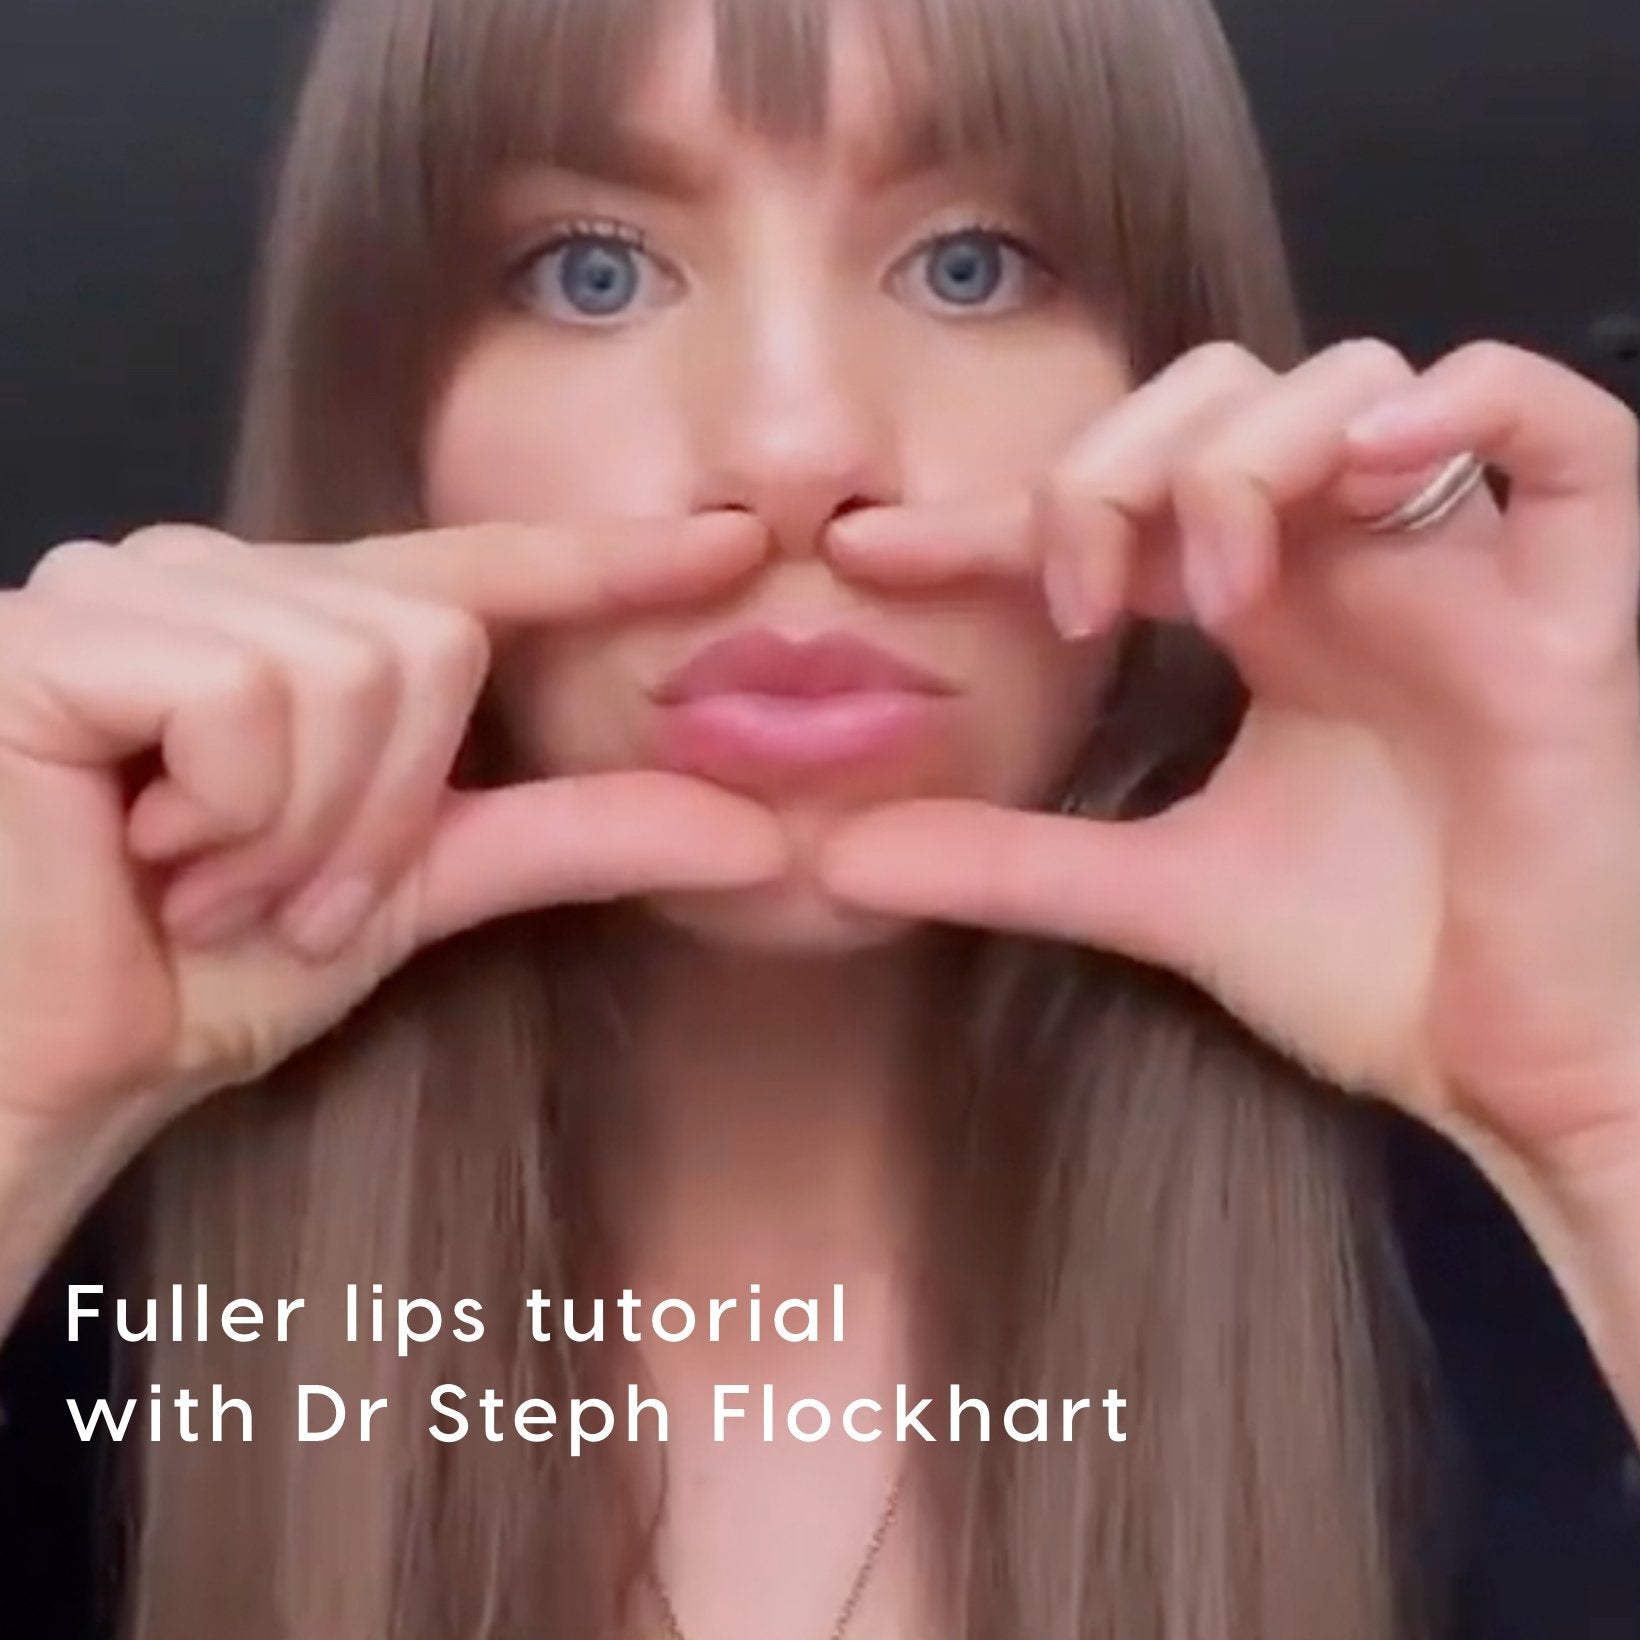 Fuller Lips Tutorial with Dr Steph Flockhart